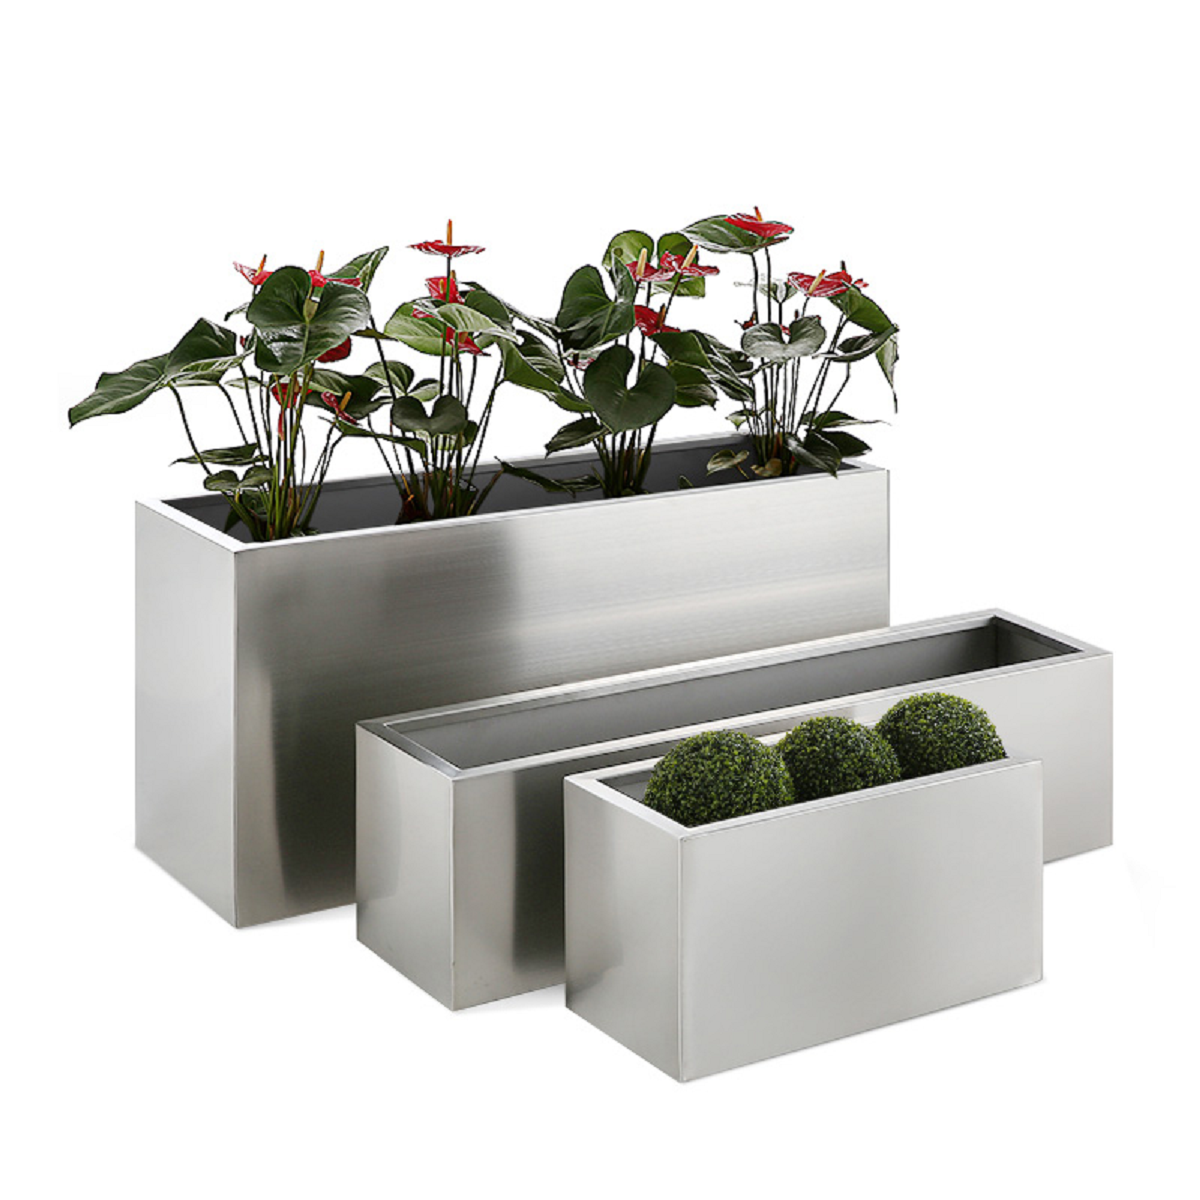 Stainless steel flower pot